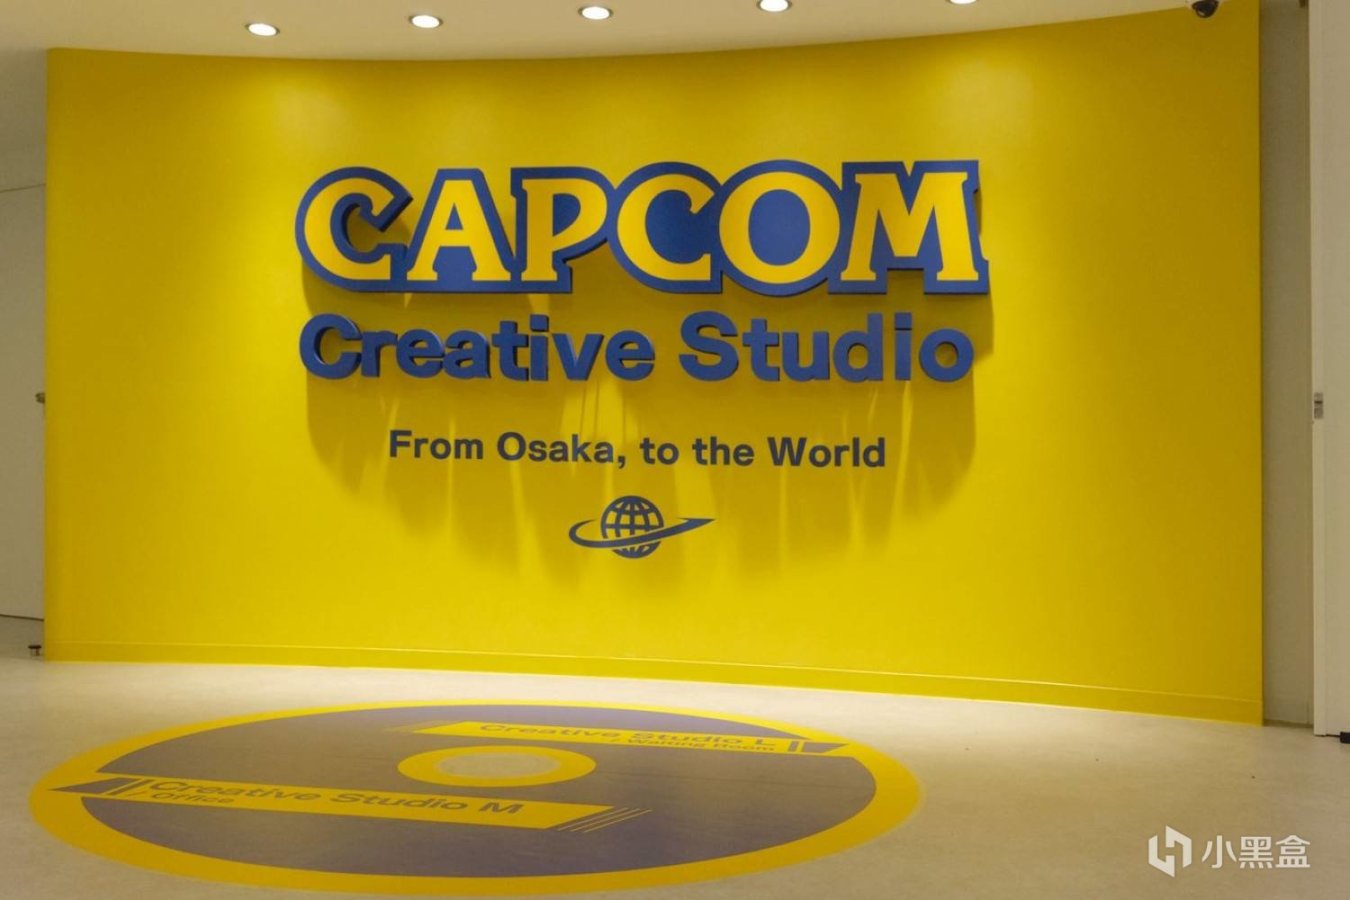 CAPCOM成立全新动作捕捉工作室 将继续致力开发未来顶尖游戏内容